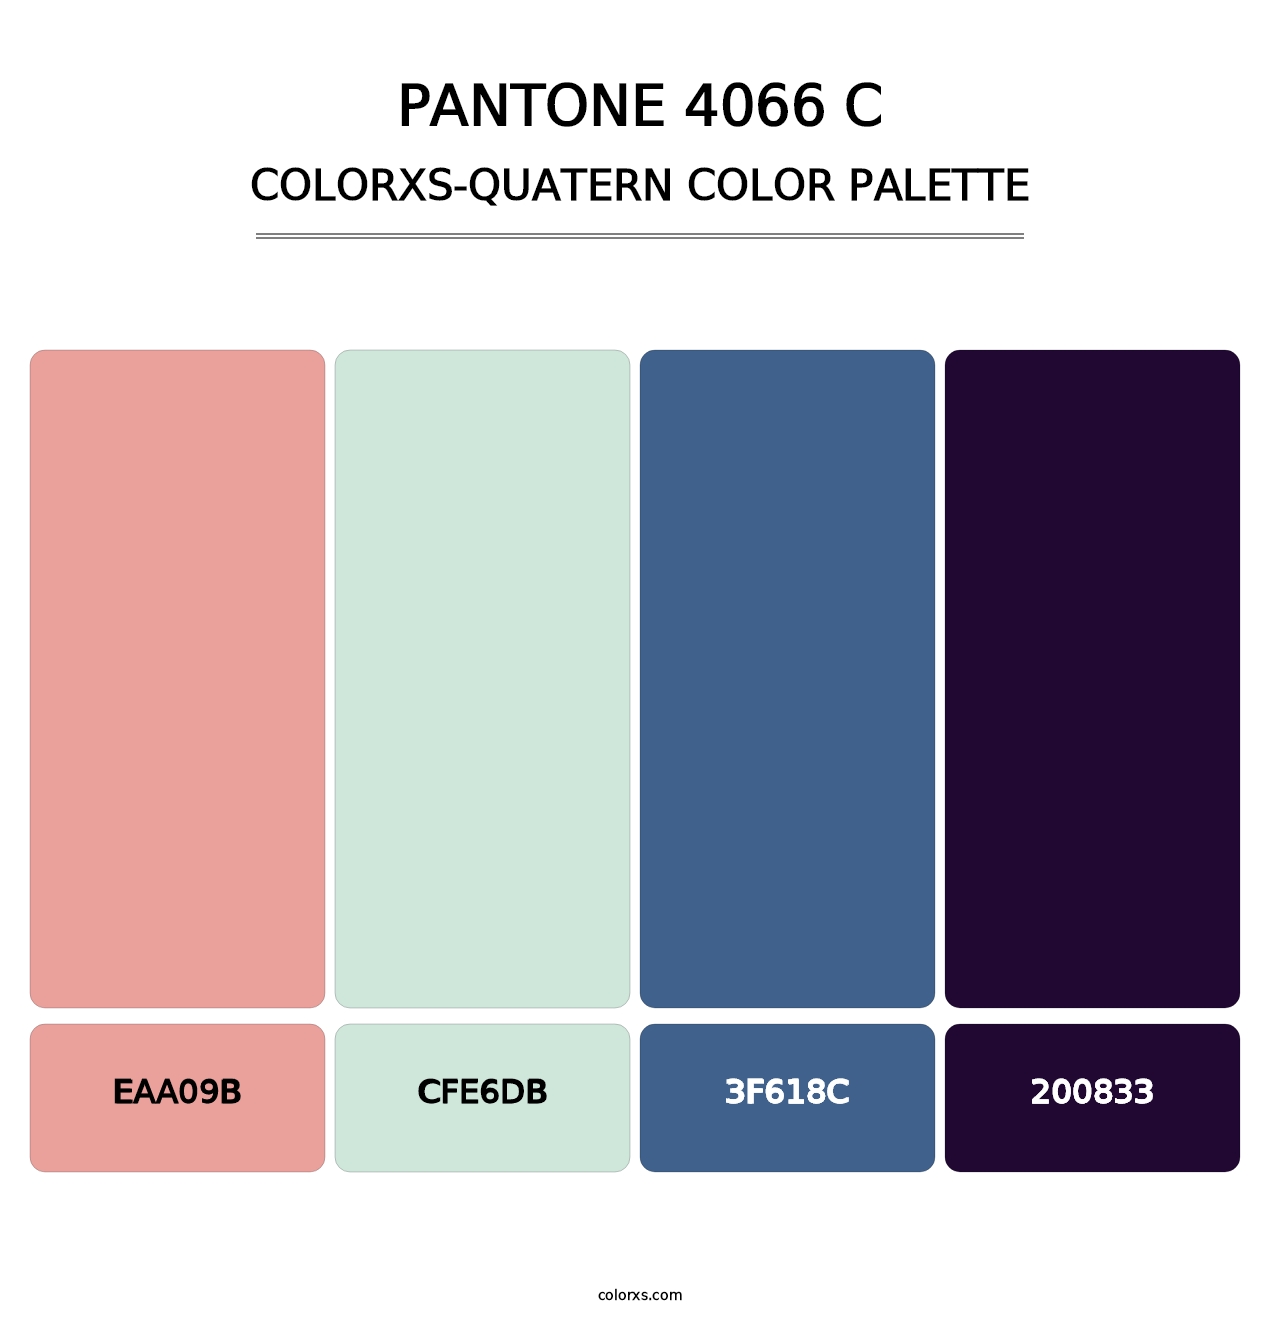 PANTONE 4066 C - Colorxs Quatern Palette